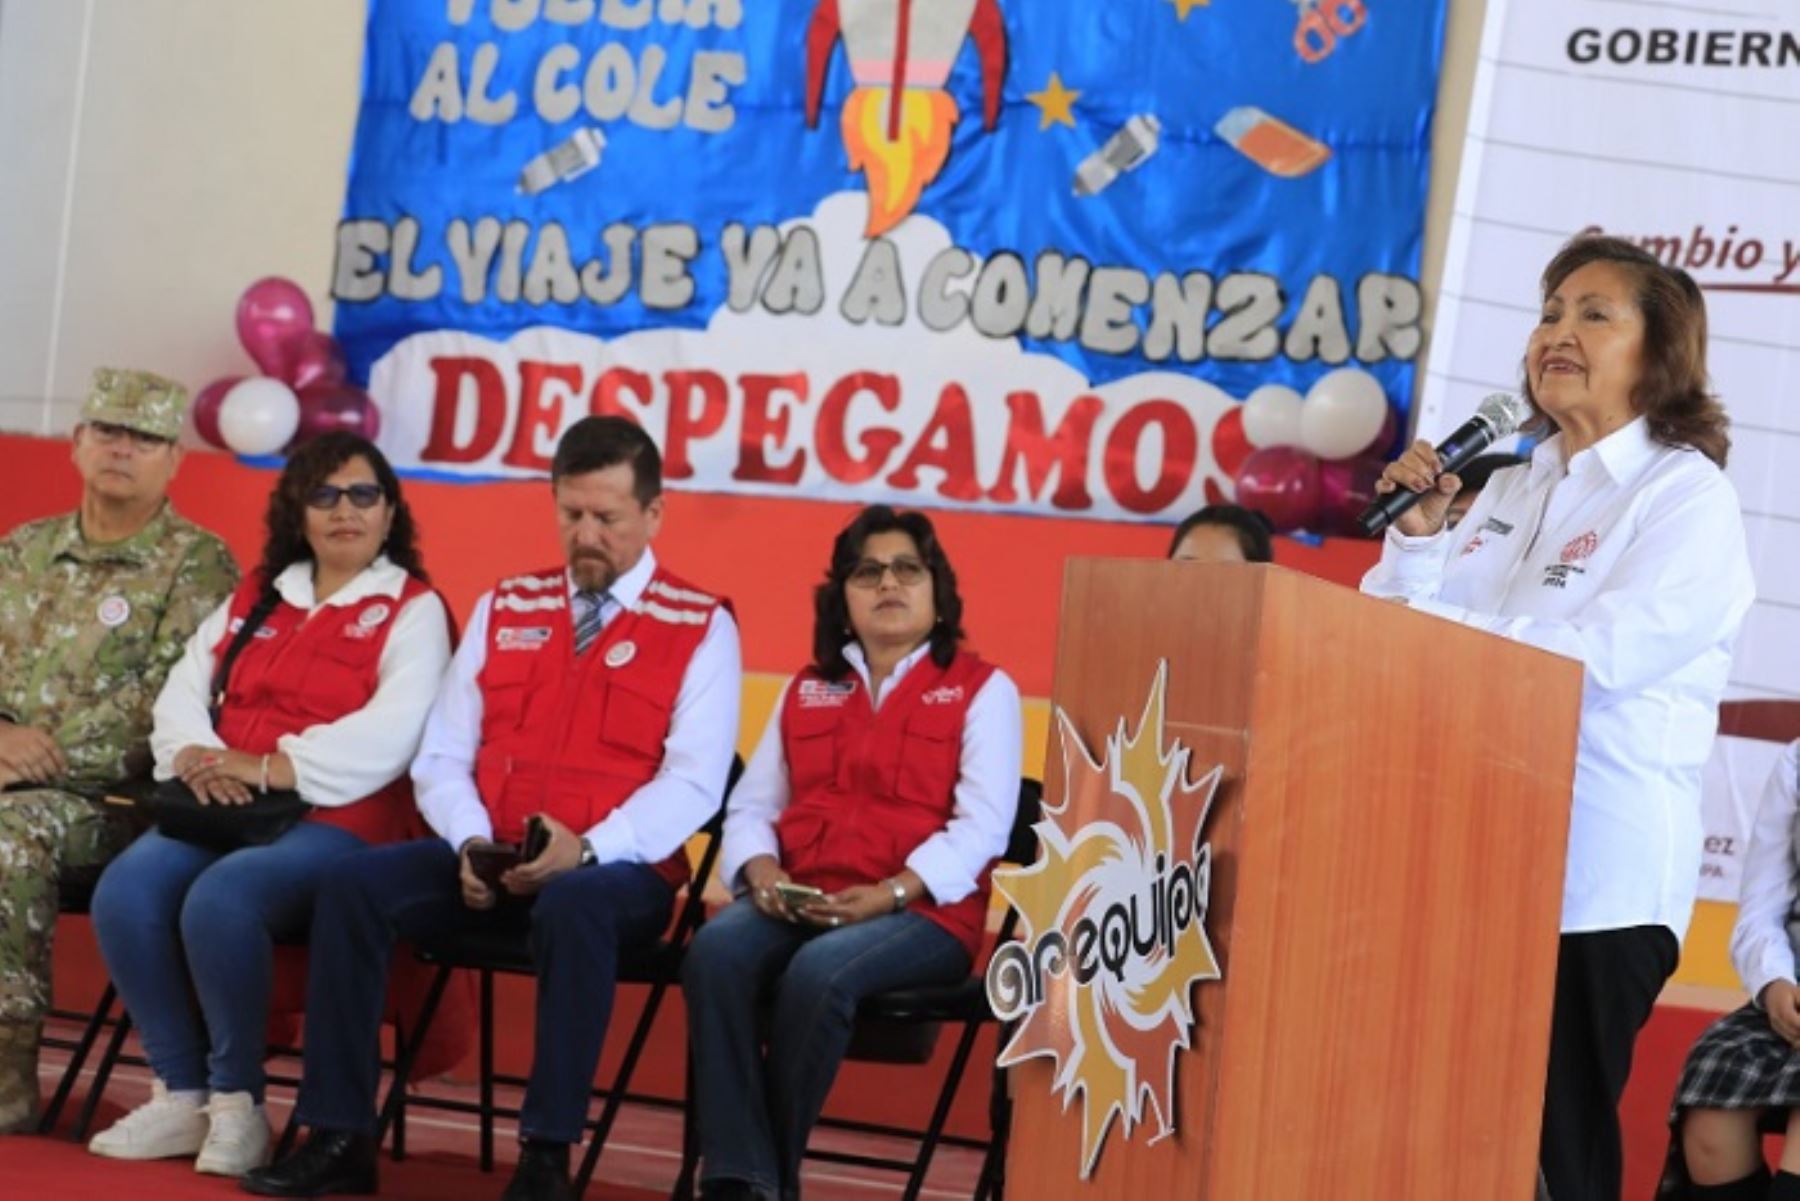 La ministra de la Producción, Ana María Choquehuanca, se dirigió a los maestros y personal educativo, a quienes reconoció y agradeció por la labor que cumplen al encargarse de formar a las futuras generaciones,ANDINA/Difusión